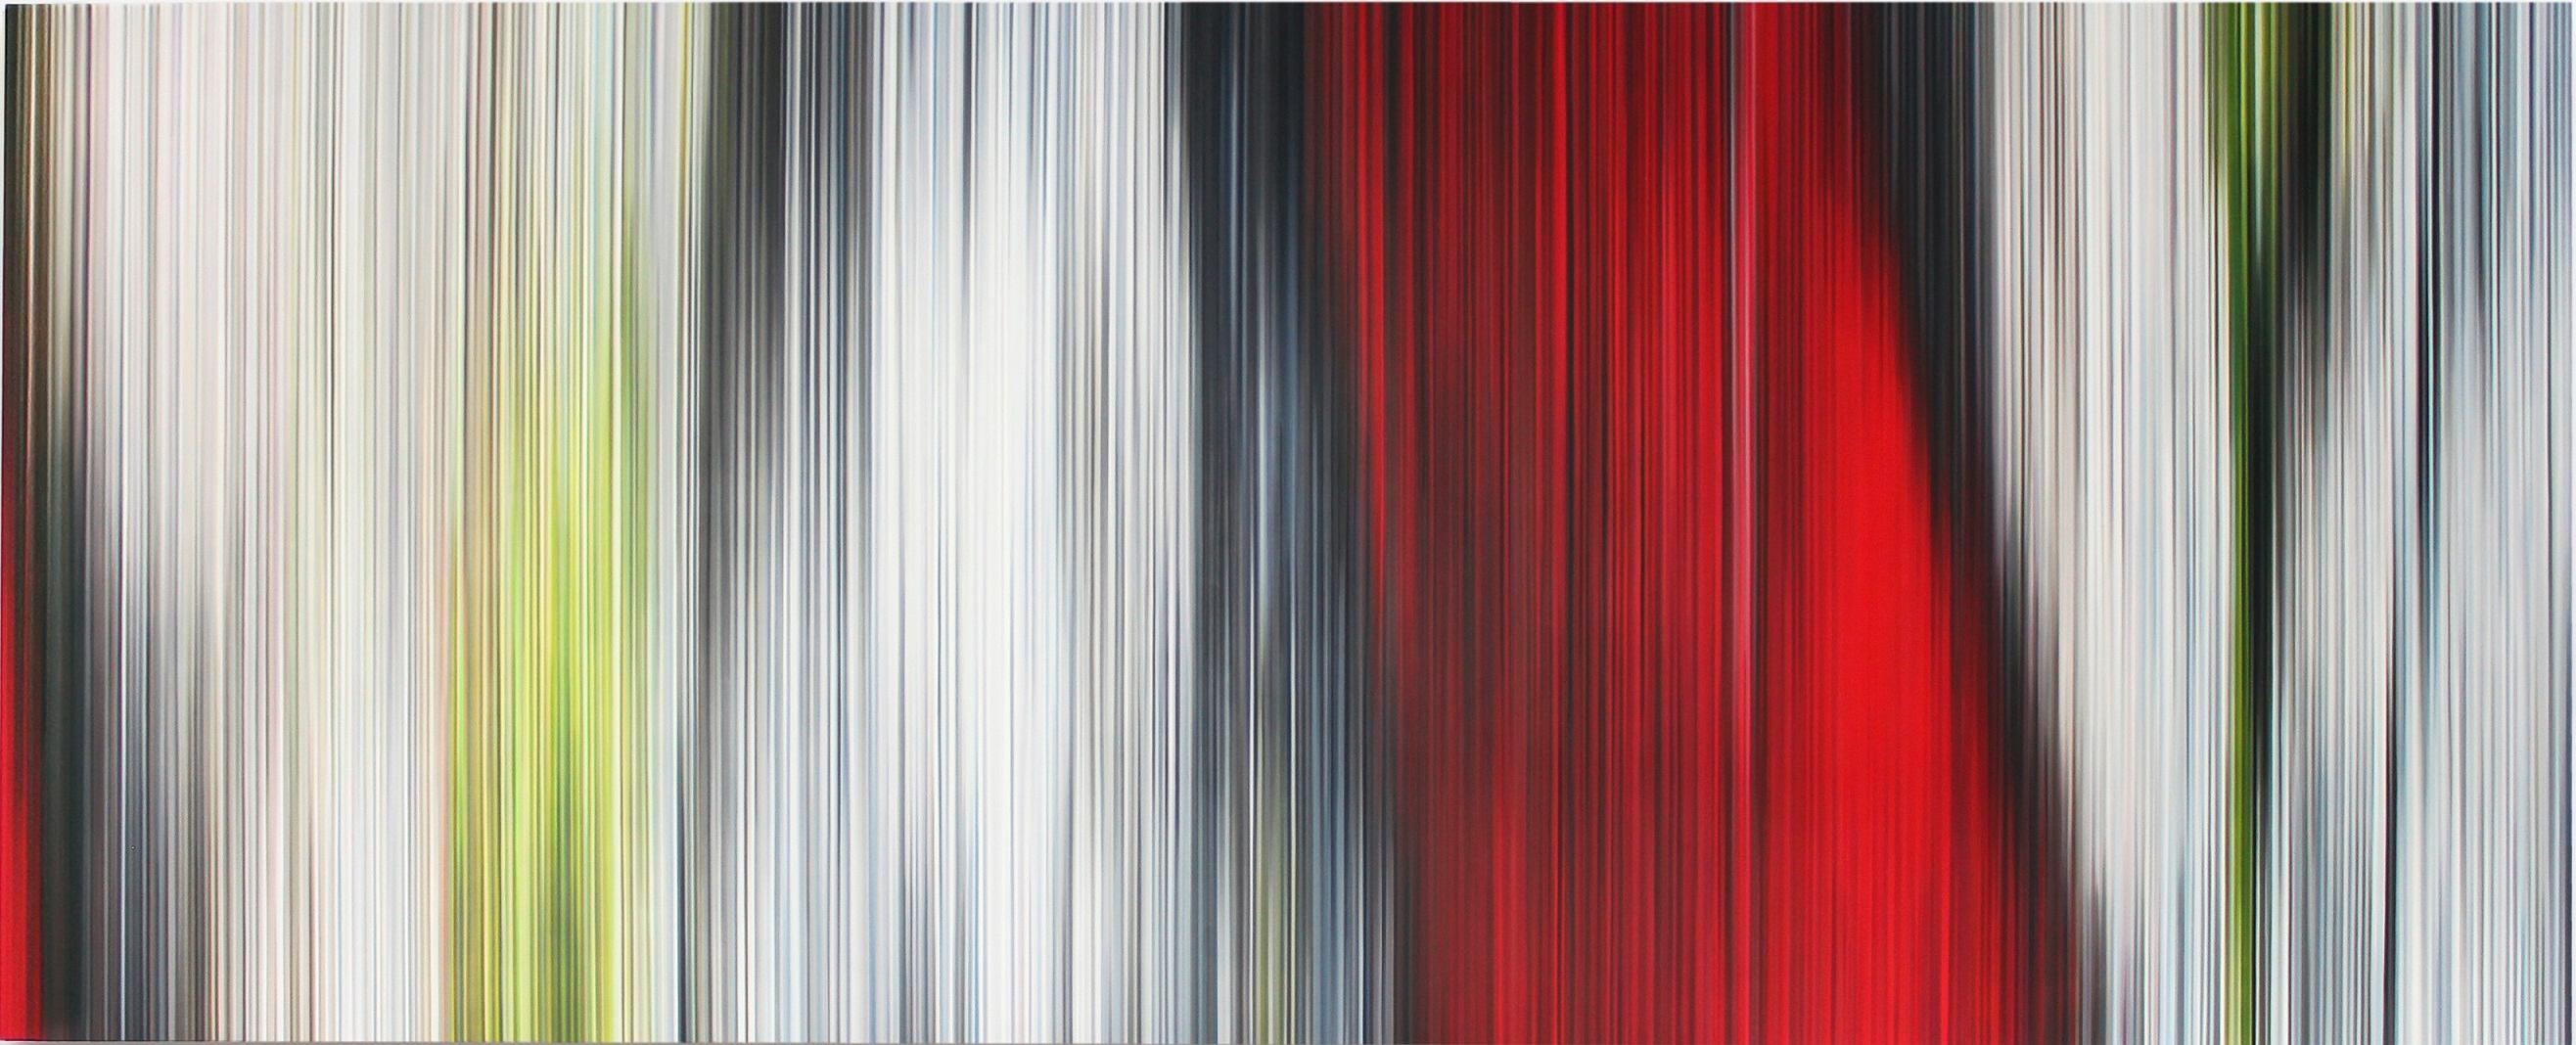 Öl auf Alu-Dibond, 80 x 200 cm.
Die deutsche Künstlerin Doris Marten erforscht die visuellen Effekte, die durch die Harmonie zwischen Licht und Farbe entstehen. Linien und das Licht sind die Hauptbestandteile ihrer Bilder. In der Light'n'Lines-Serie